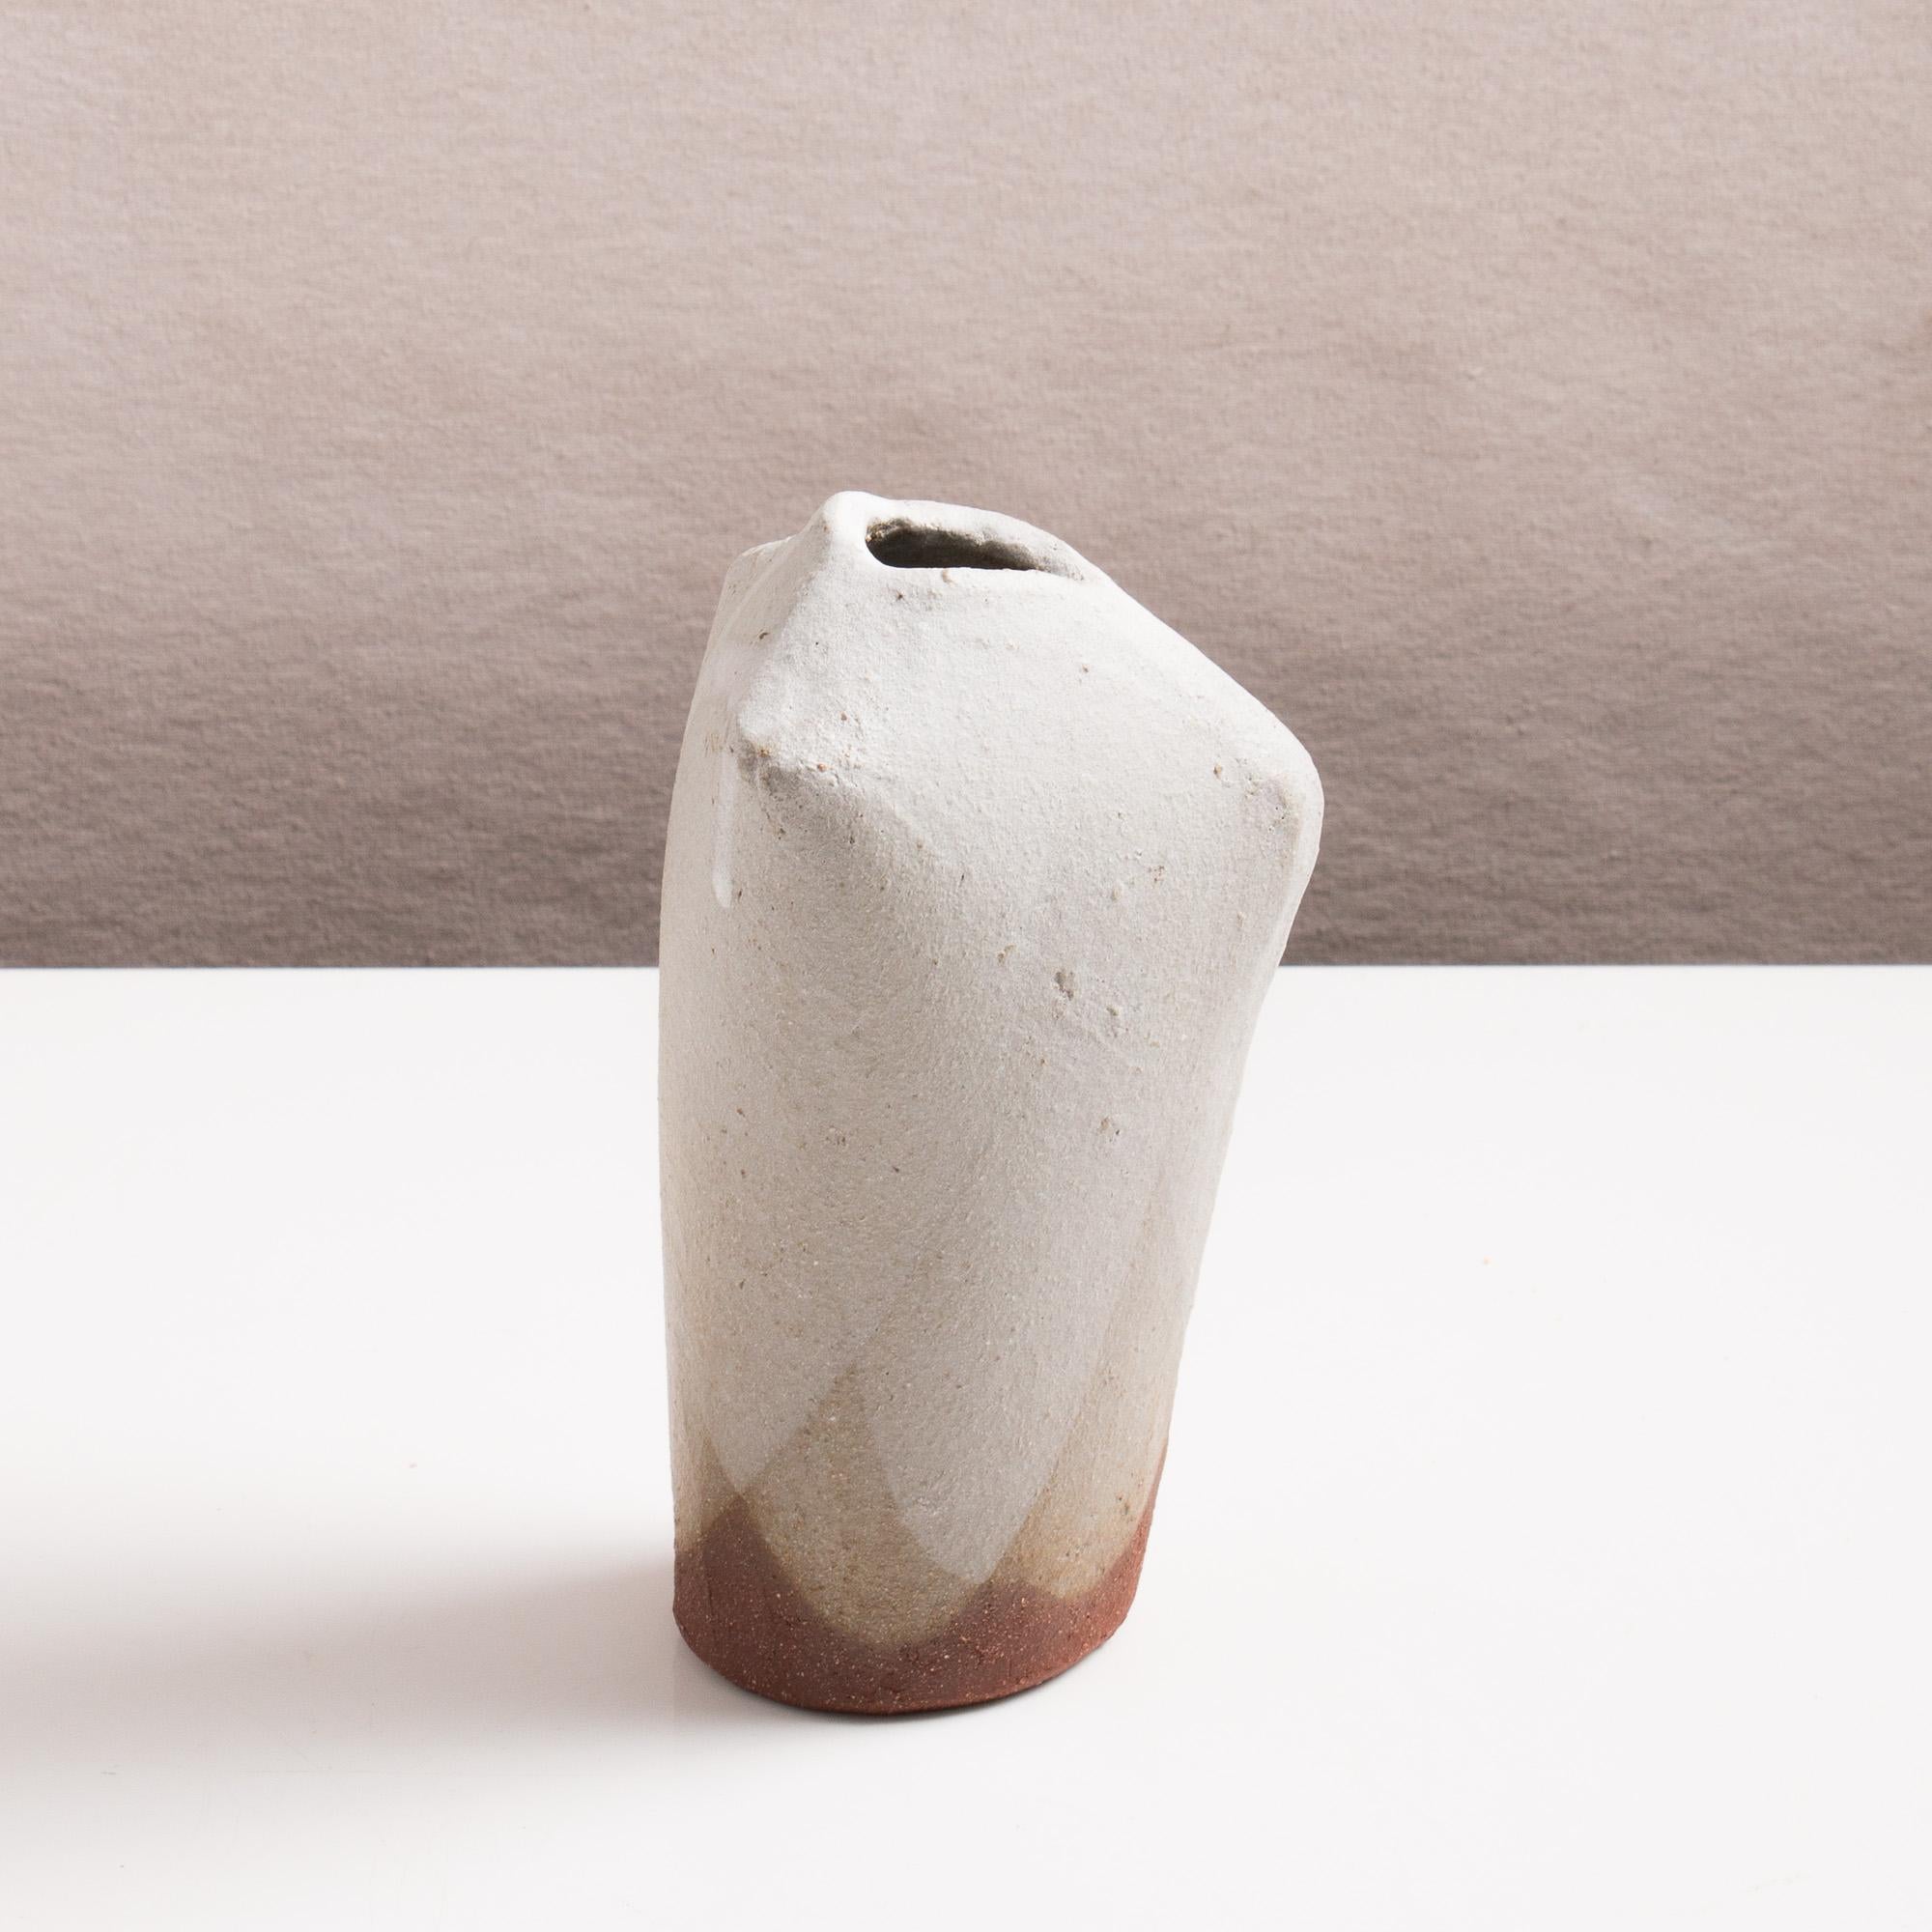 American Handmade Matte White Glazed Modern Ceramic Bone Vases, Set of Two For Sale